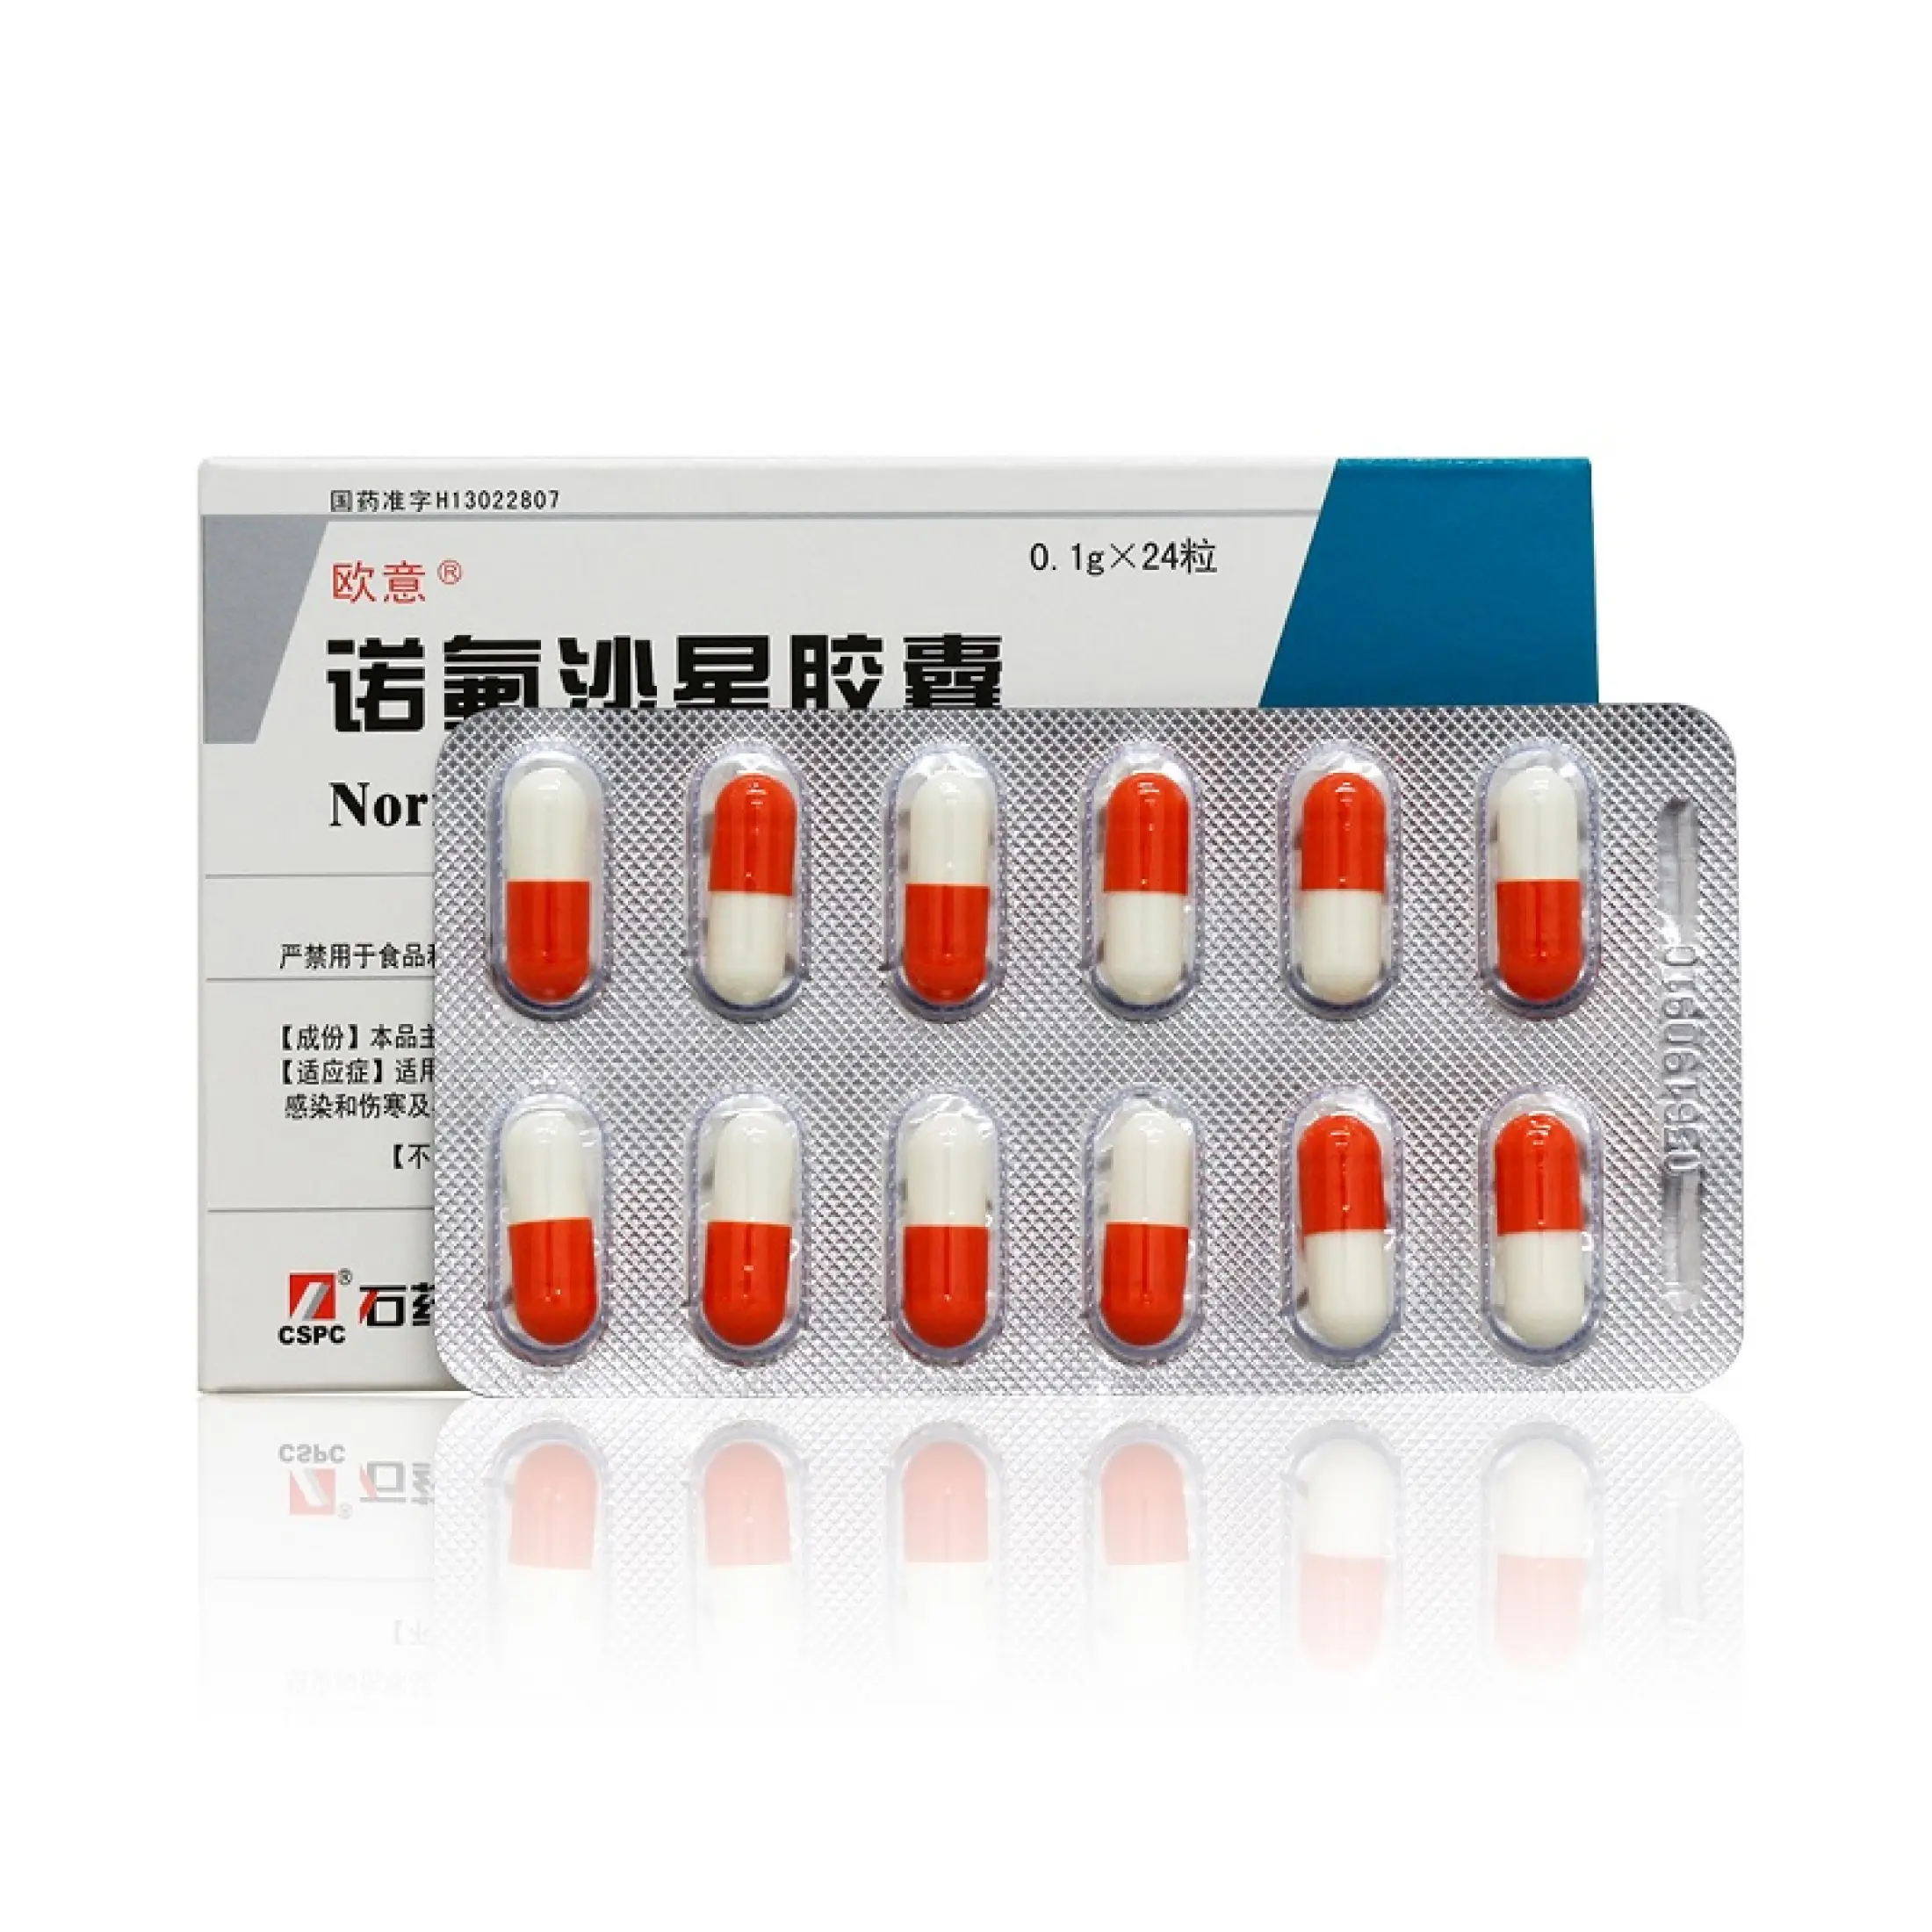 norfloxacin for prostatitis